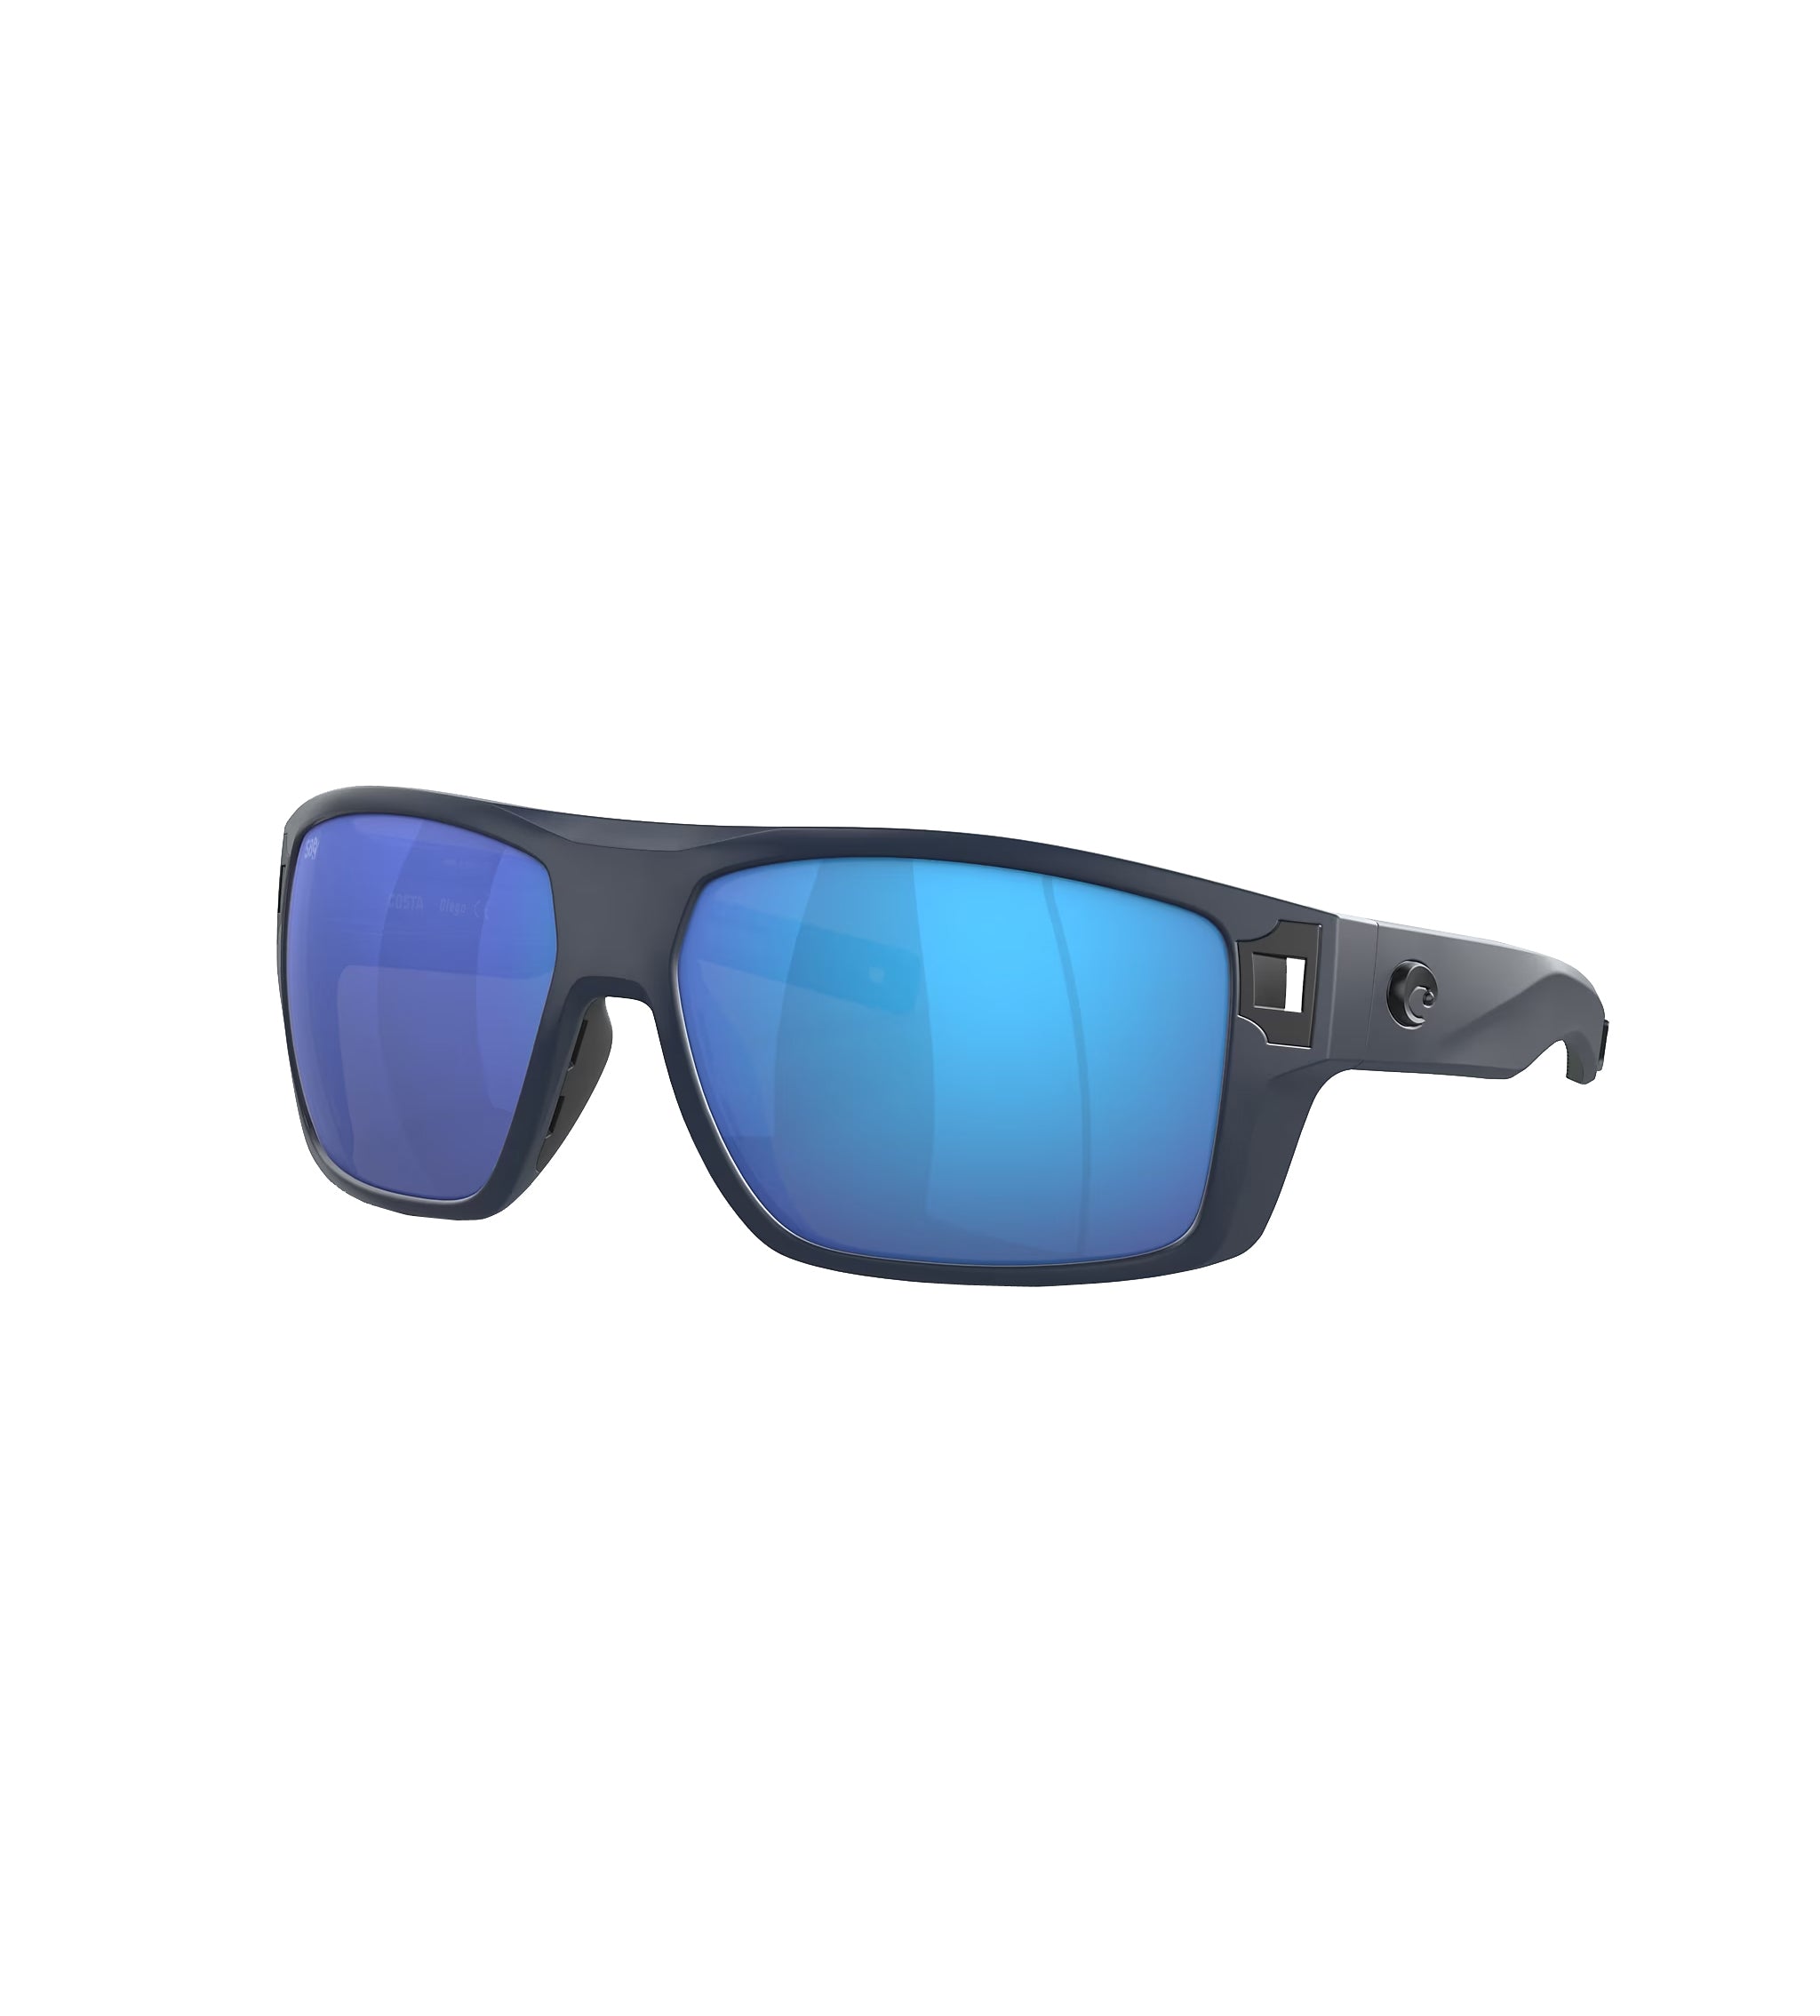 Costa Del Mar Diego Polarized Sunglasses  MatteGray BlueMirror 580G